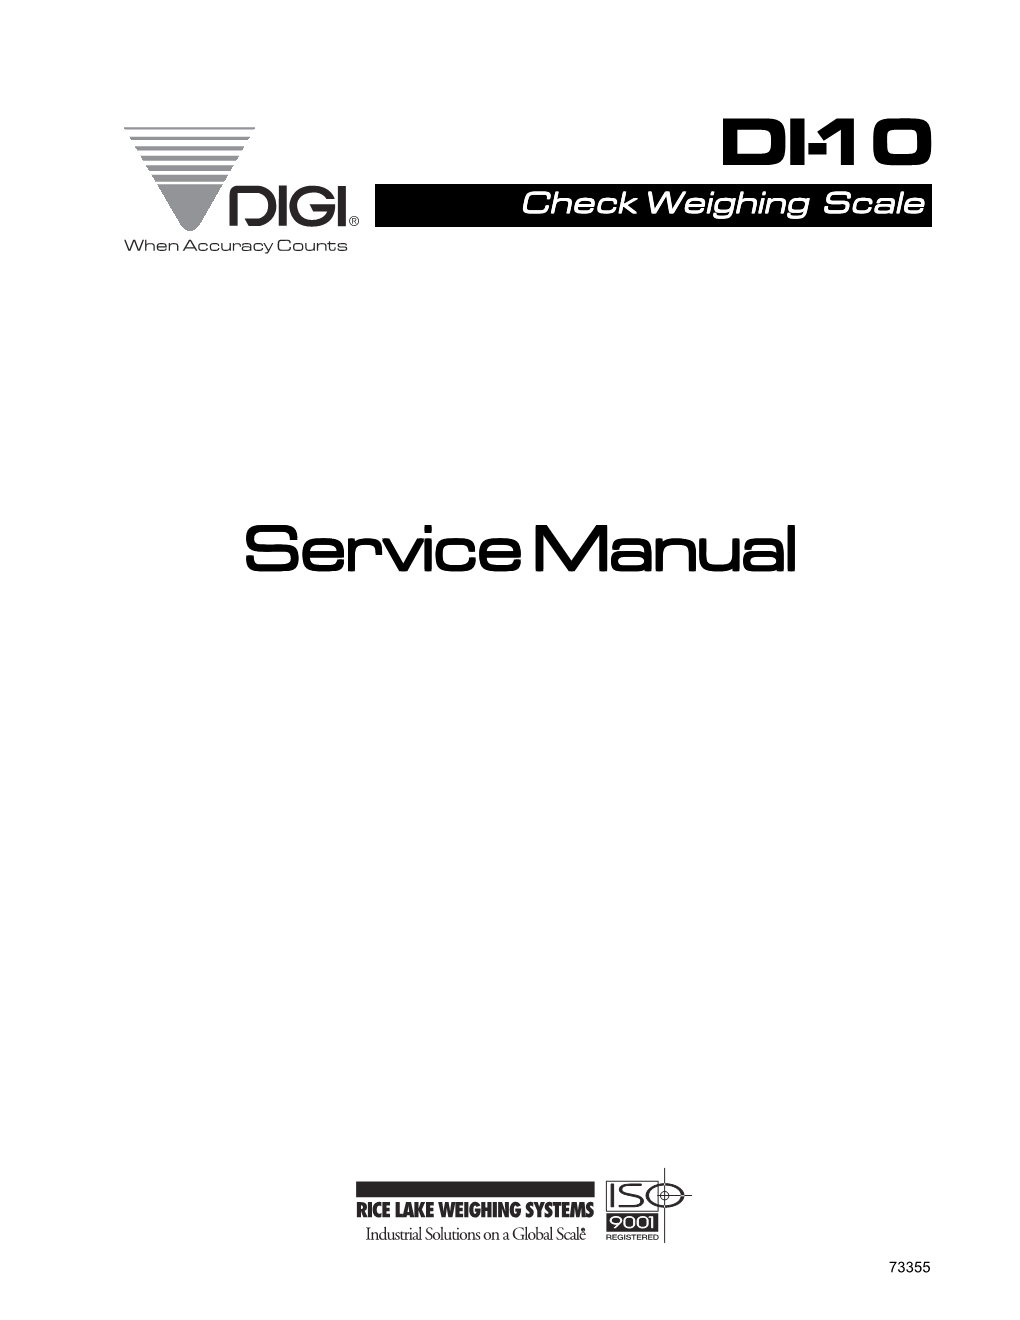 DI-10 Service Manual